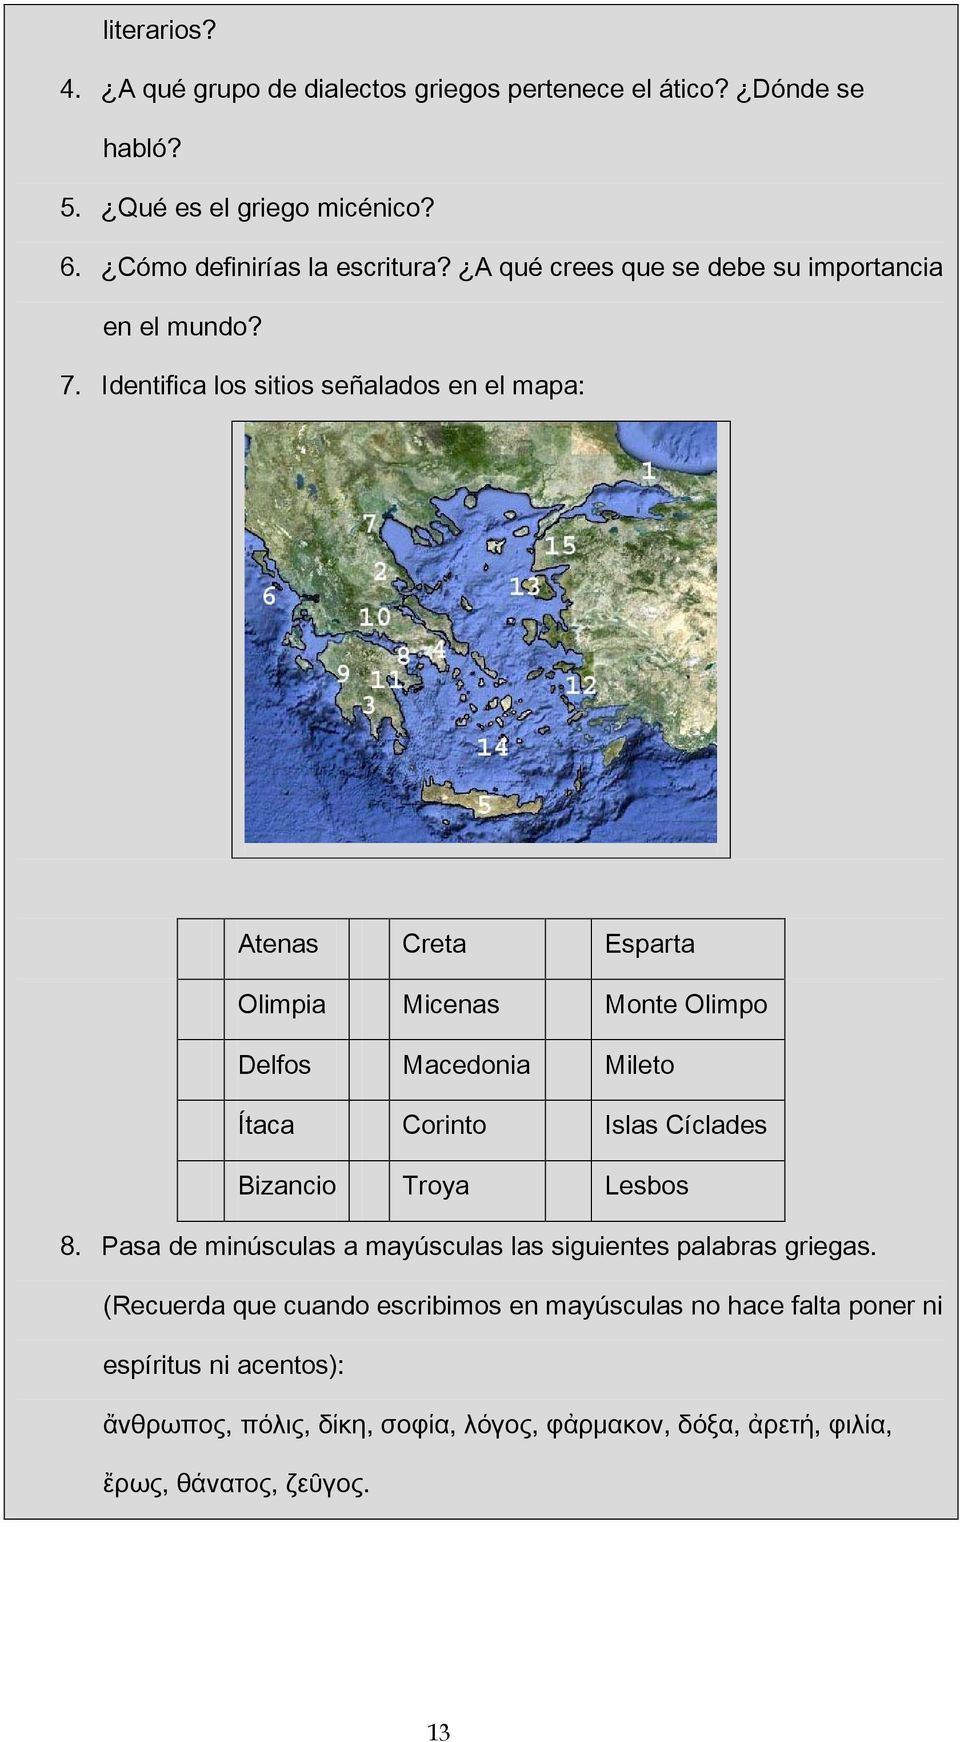 Identifica los sitios señalados en el mapa: Atenas Creta Esparta Olimpia Micenas Monte Olimpo Delfos Macedonia Mileto Ítaca Corinto Islas Cíclades Bizancio